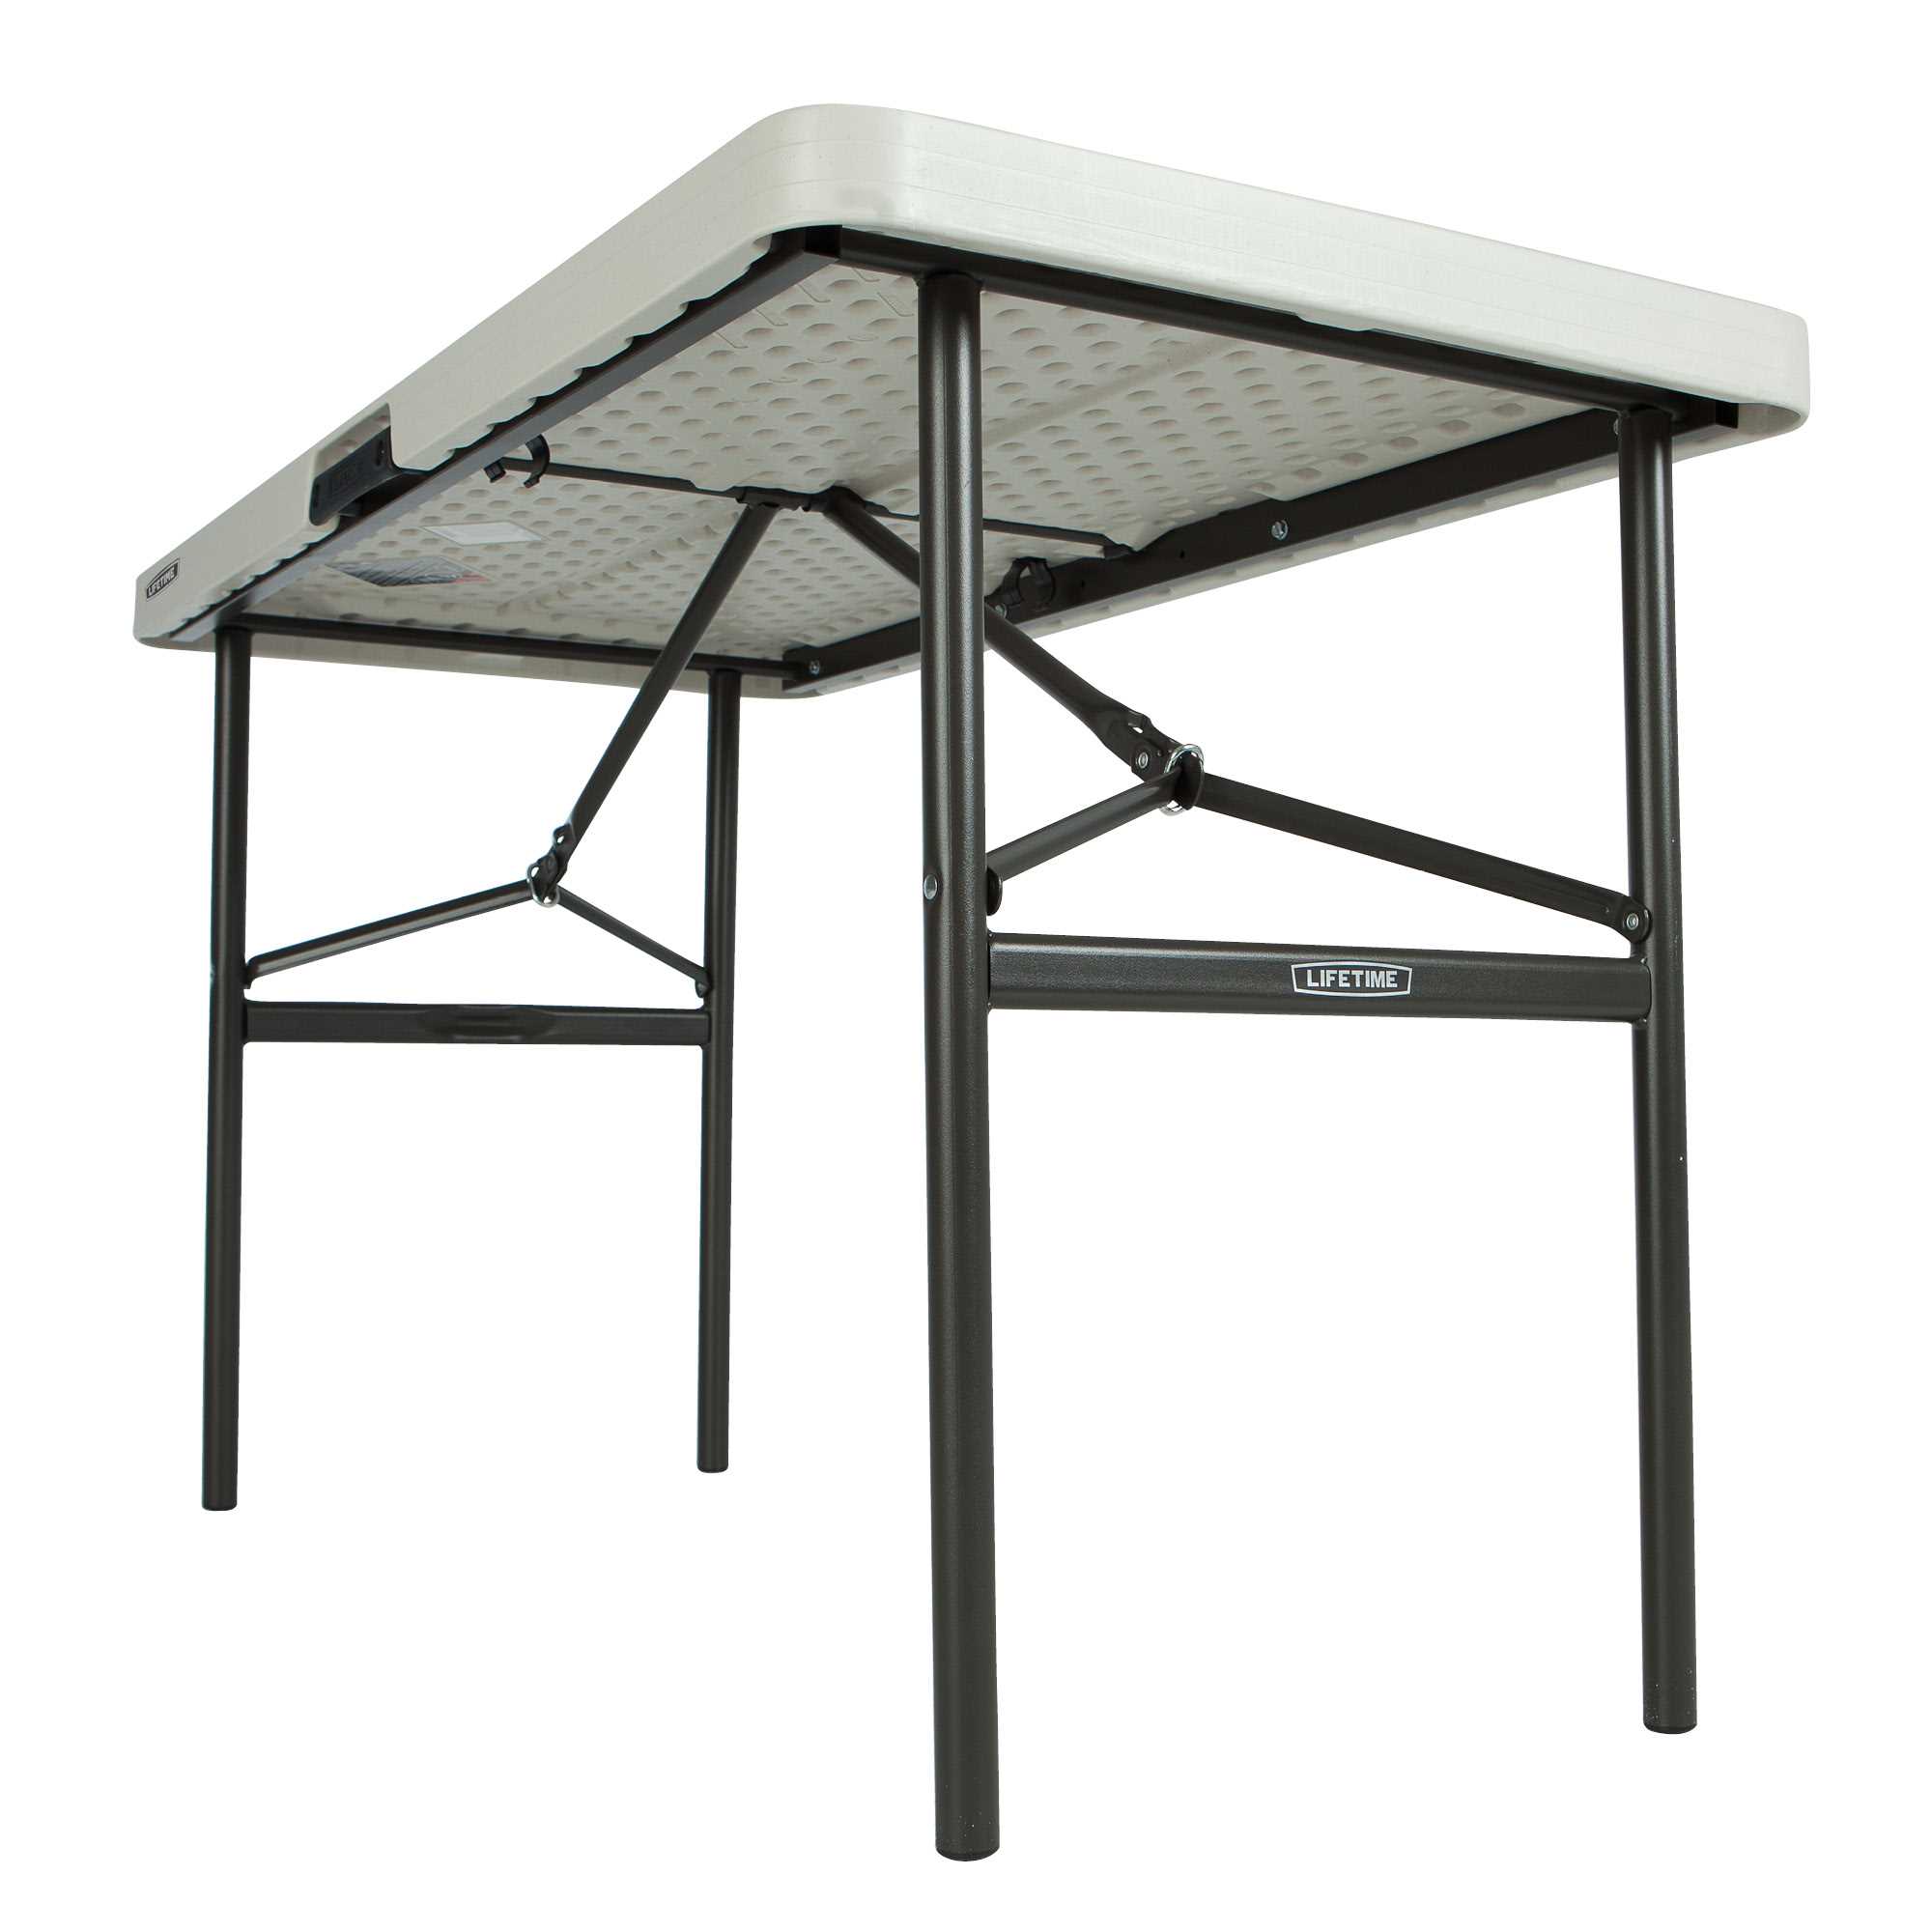 Table pliante rectangulaire (beige) 122cm / 4 personnes